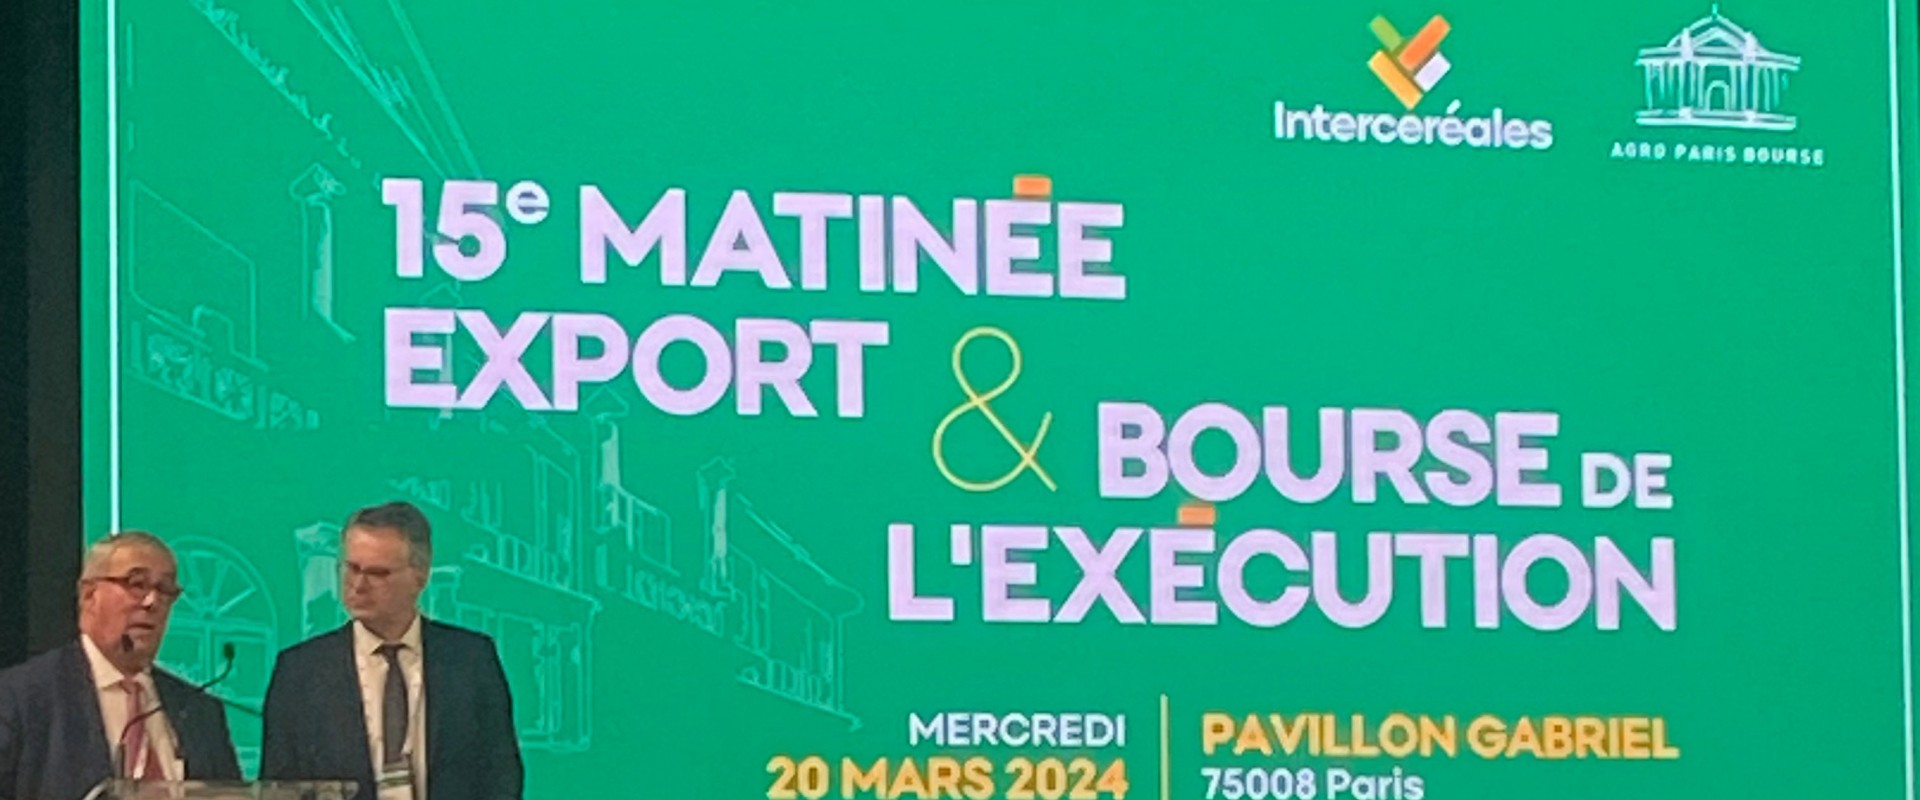 Nantes ‒ Saint Nazaire Port Takes Part in Intercéréales Grain Export Conference